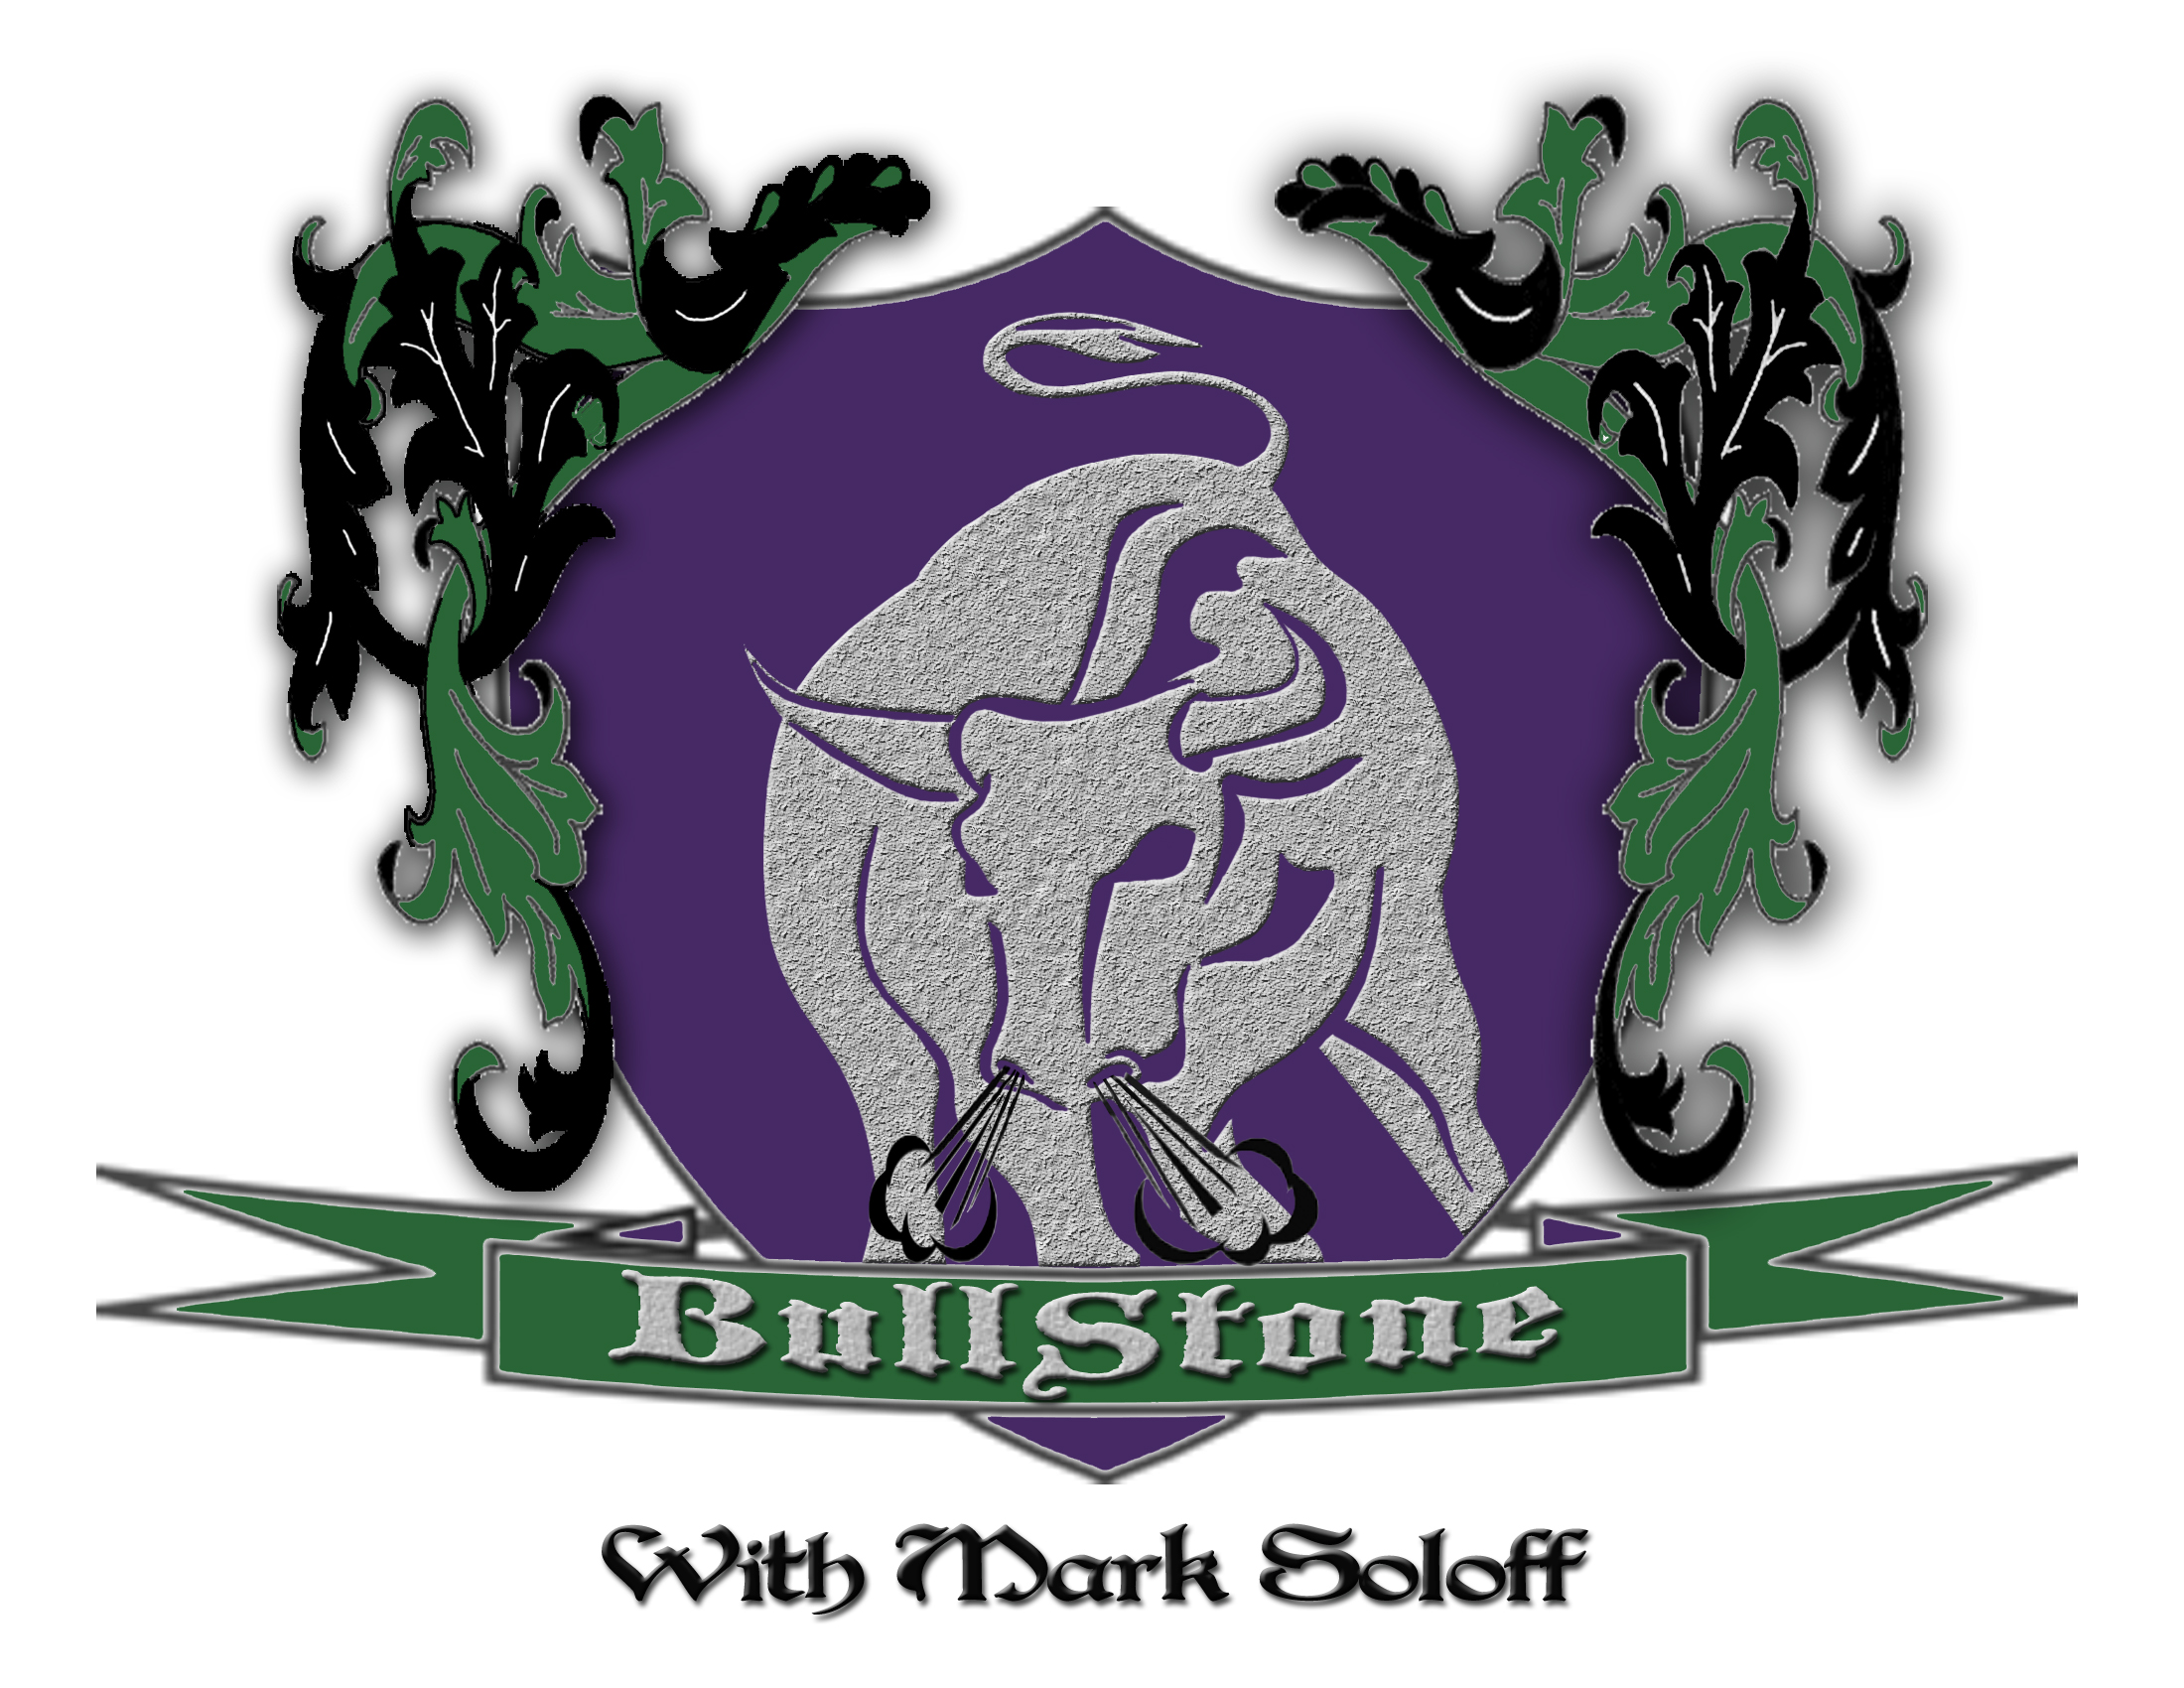 BullStone 1